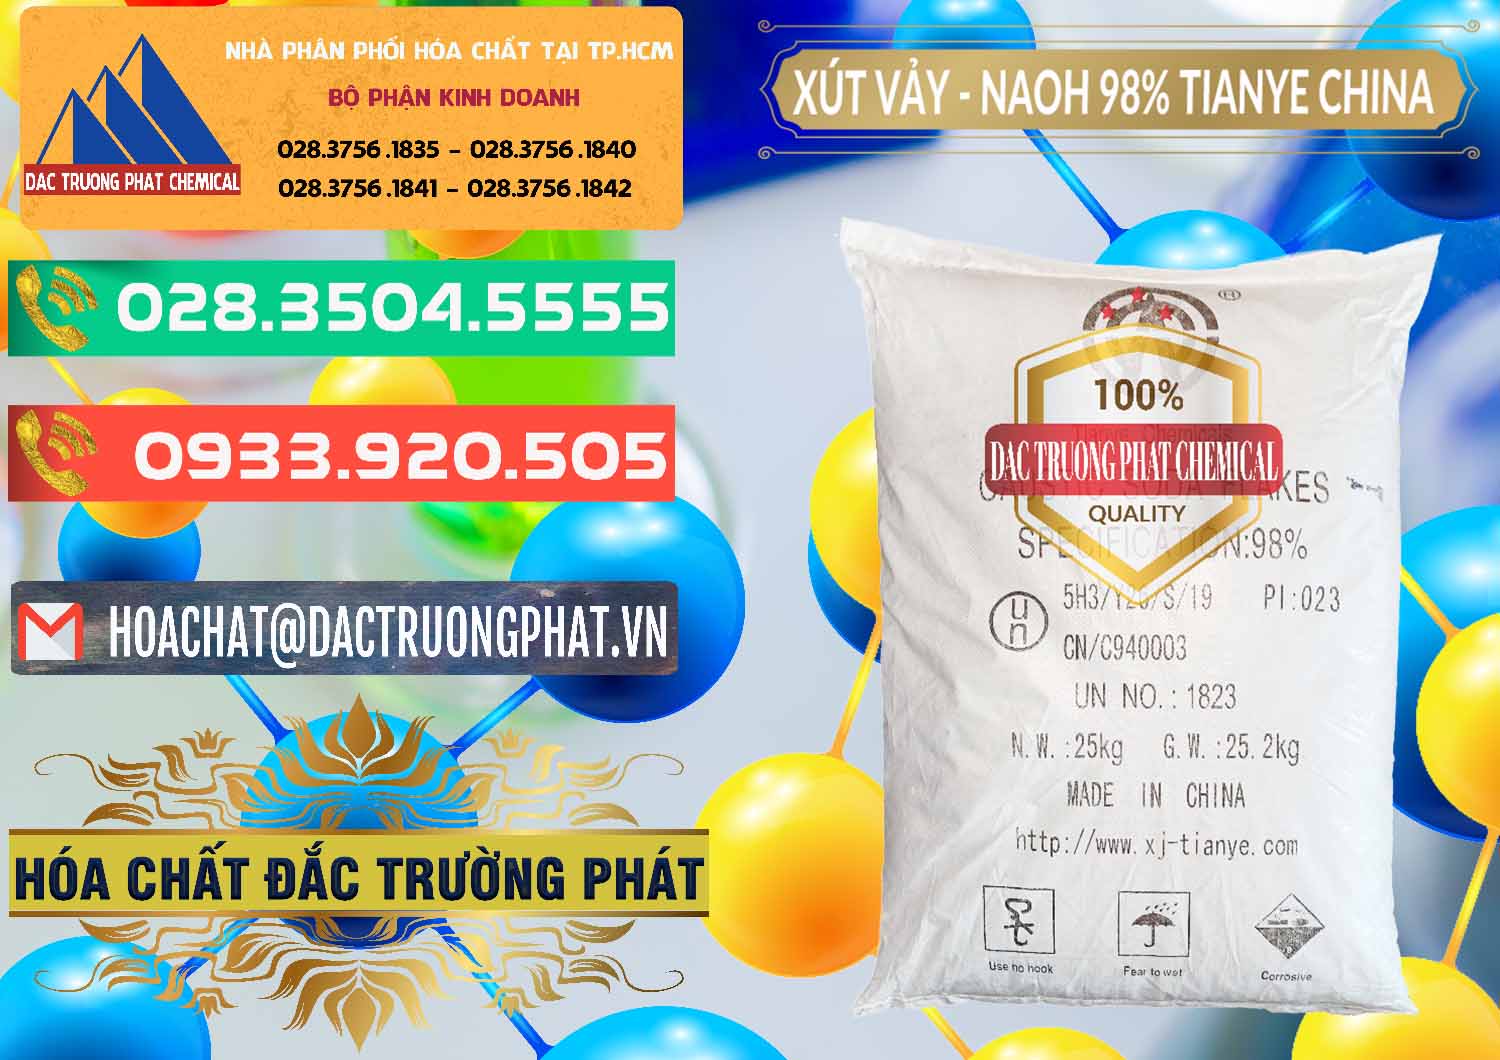 Cty chuyên bán _ cung cấp Xút Vảy - NaOH Vảy 98% Tianye Trung Quốc China - 0177 - Cty nhập khẩu và cung cấp hóa chất tại TP.HCM - congtyhoachat.com.vn